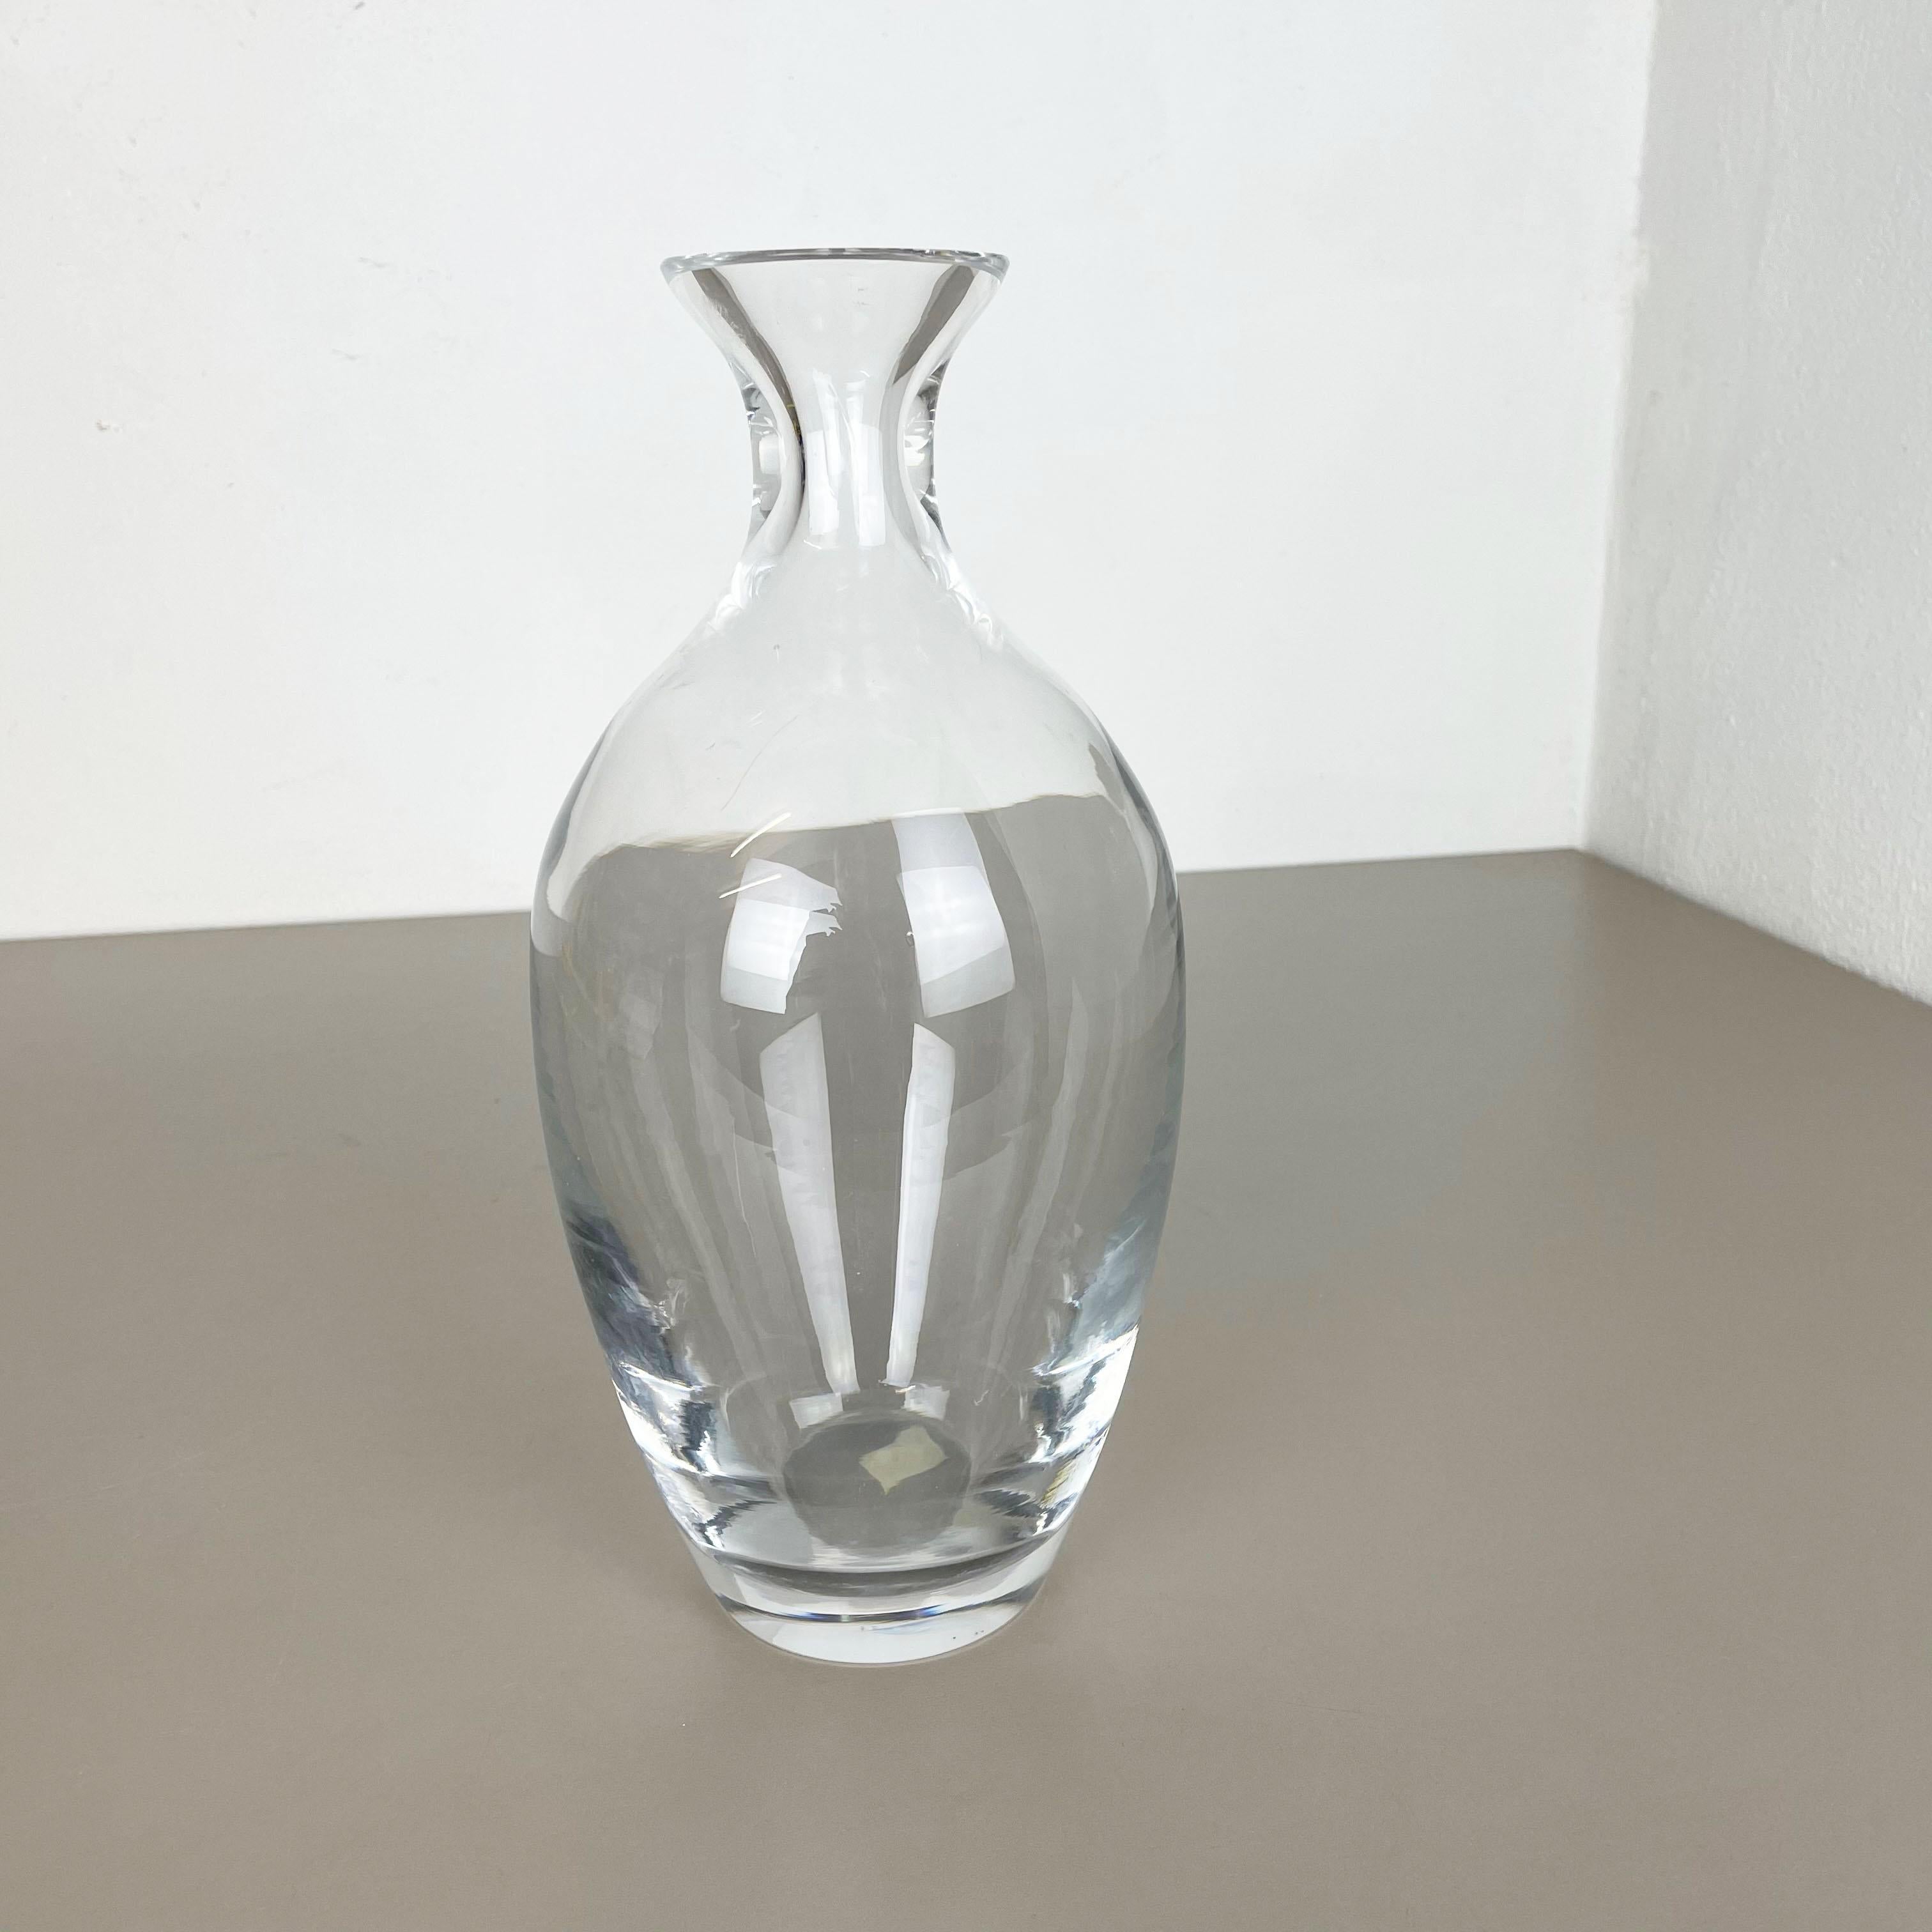 Article :

Élément de vase en verre de Murano


Producteur :

Cenedese Vetri, Italie

Origine :

Murano, Italie


Décennie :

1970s



Ce vase en verre original a été produit dans les années 1970 à Murano, en Italie, par Cenedese